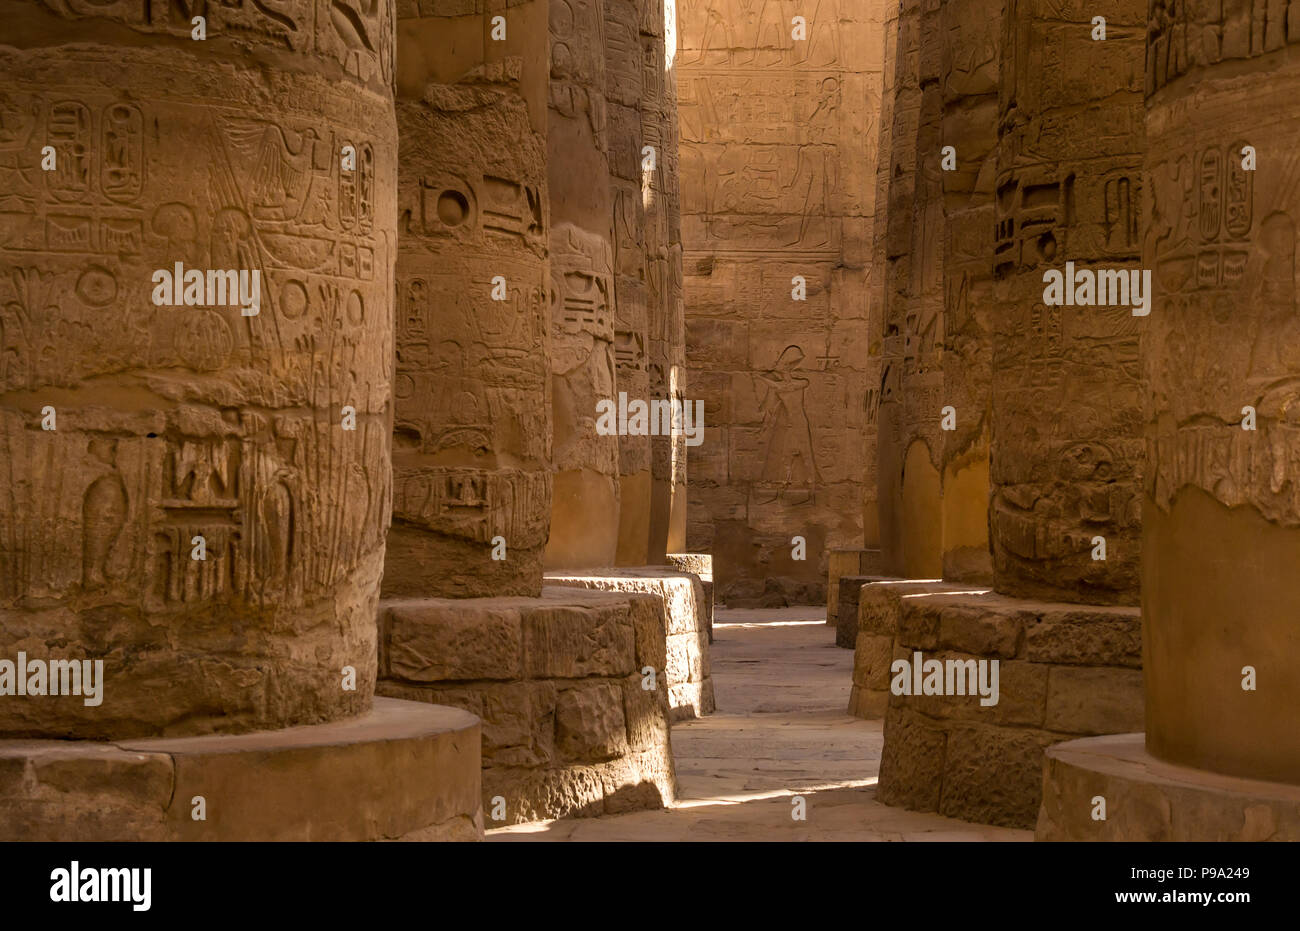 Enormi colonne di pietra con geroglifici egiziani nel grande hypostyle hall, distretto di Amon Ra, Tempio di Karnak. Luxor, Egitto, Africa Foto Stock